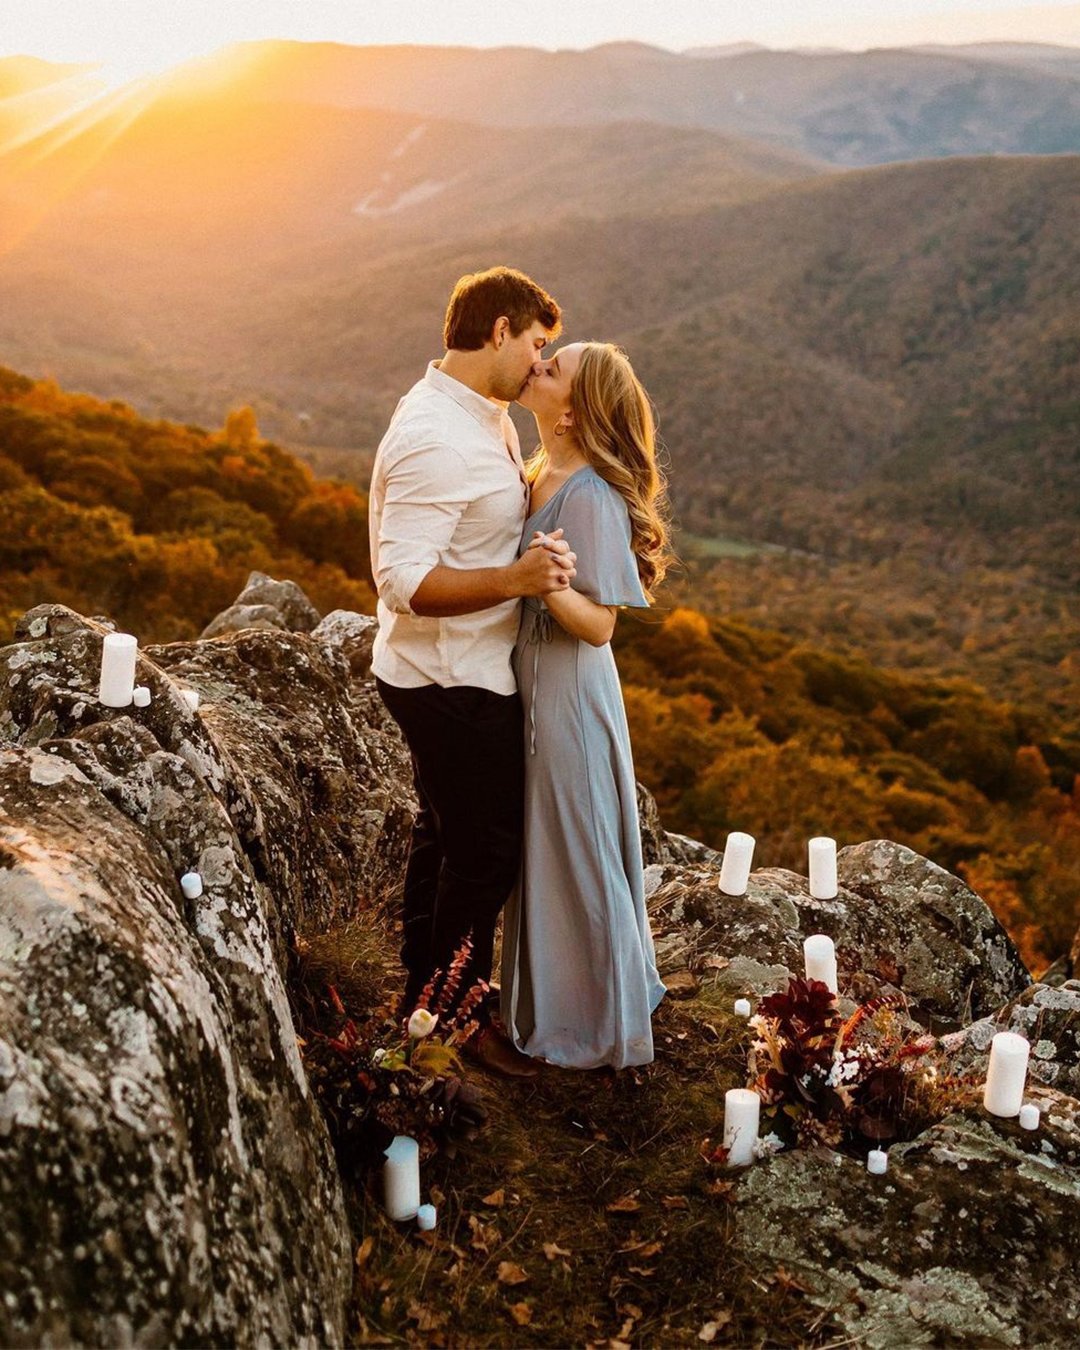 honeymoon photo ideas outdoor romantic photoshoot